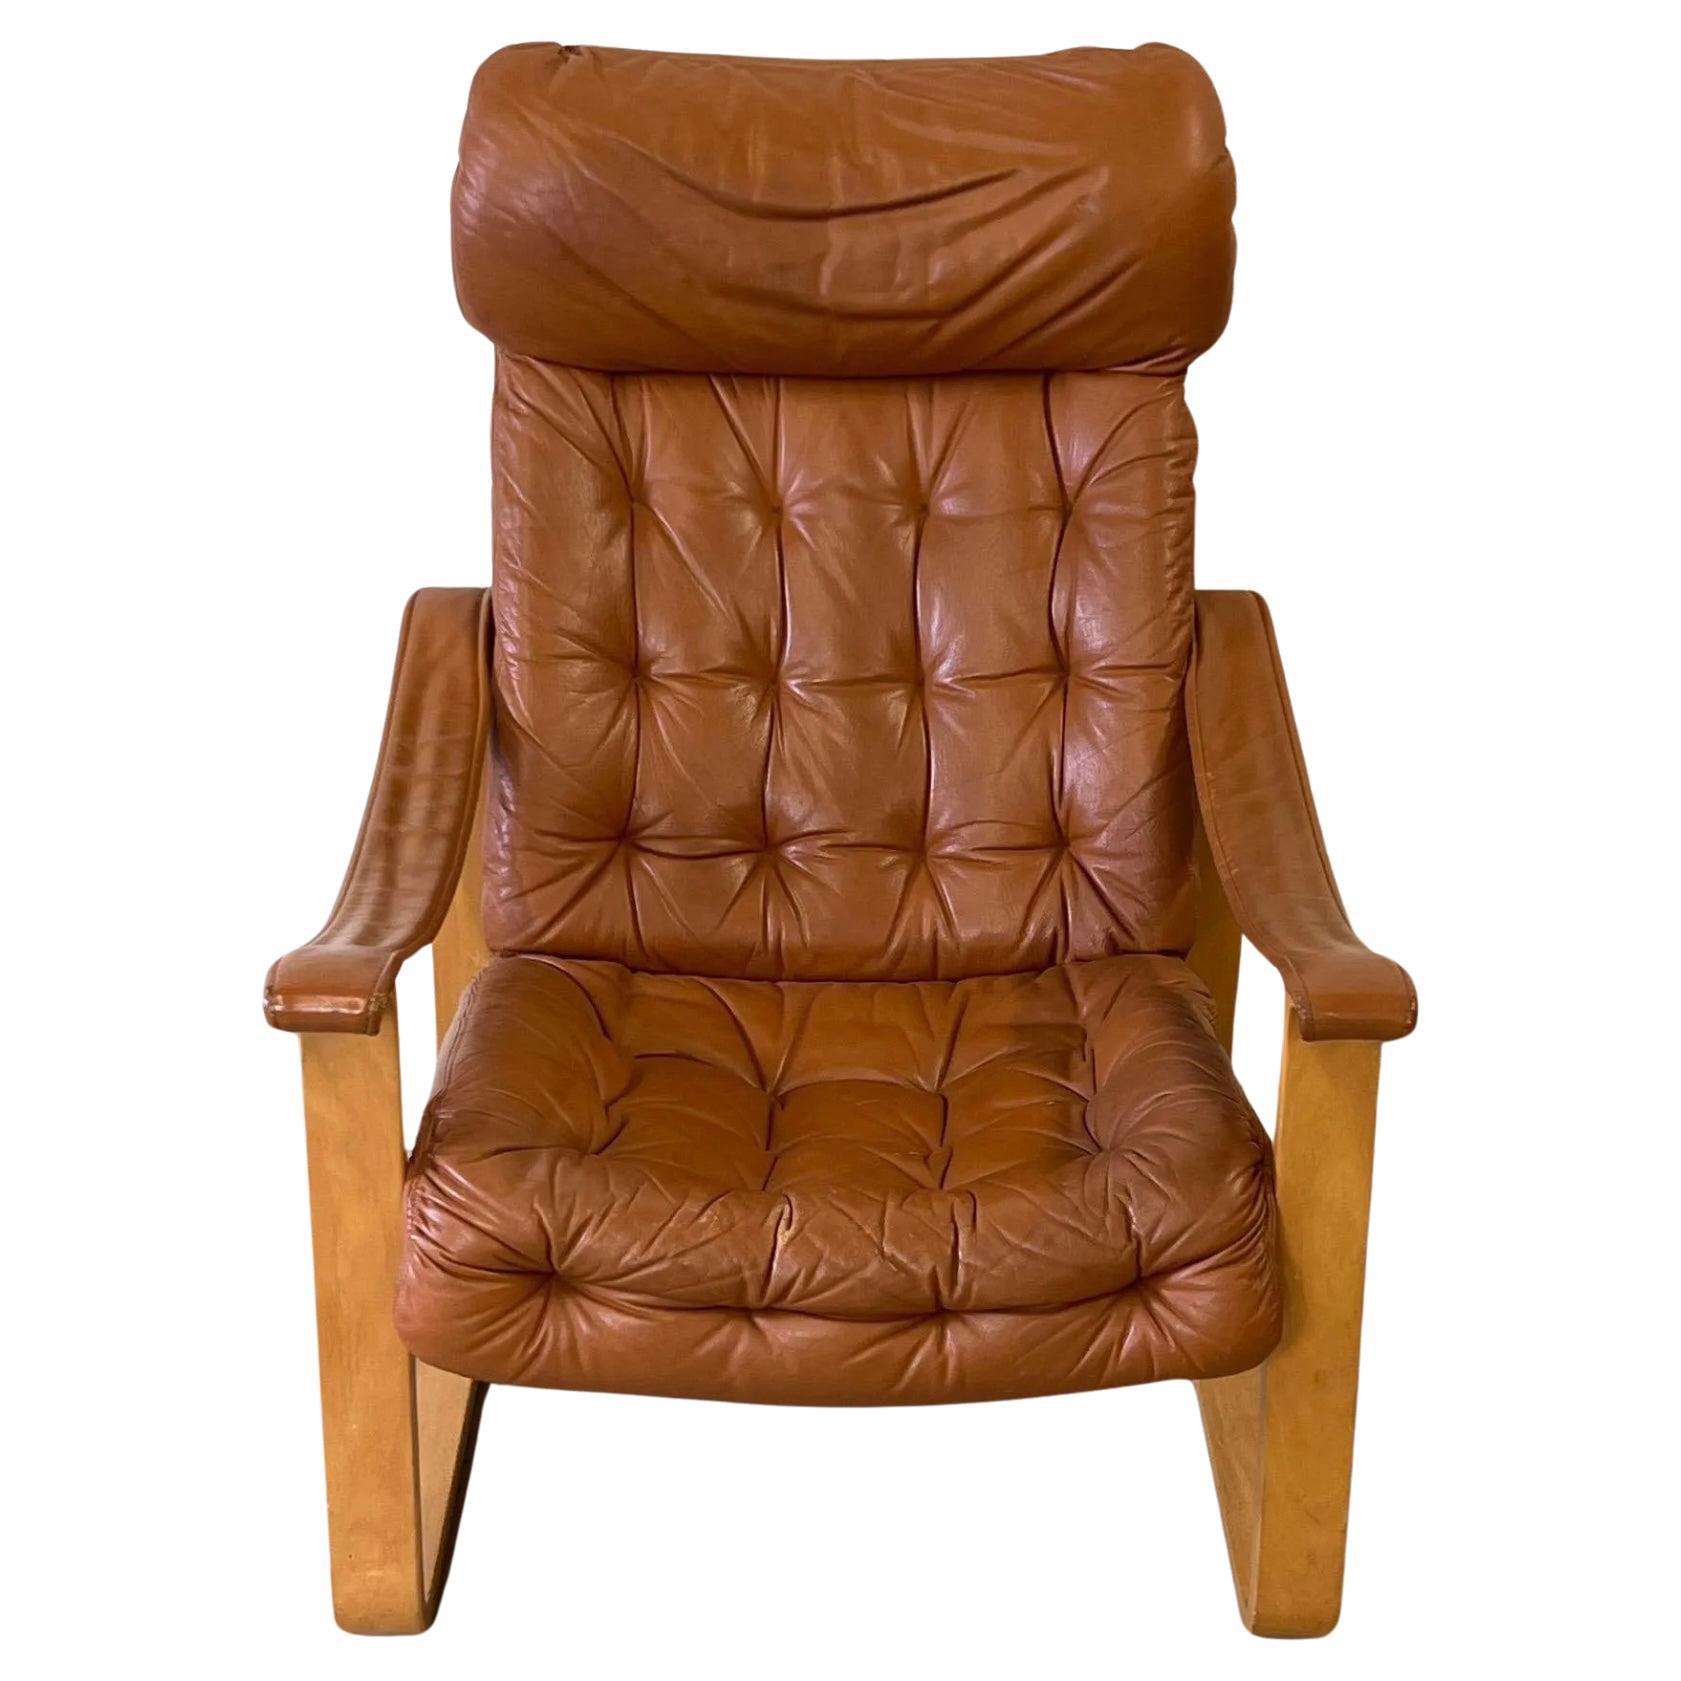 Chaise longue en cuir conçue par Bjarne (BJ) Dahlqvist pour BD-Mobel Ab. Cette chaise finlandaise des années 1970 présente une structure en bois courbé blond, une assise et un dossier en cuir touffeté, un appui-tête en cuir et des accoudoirs en